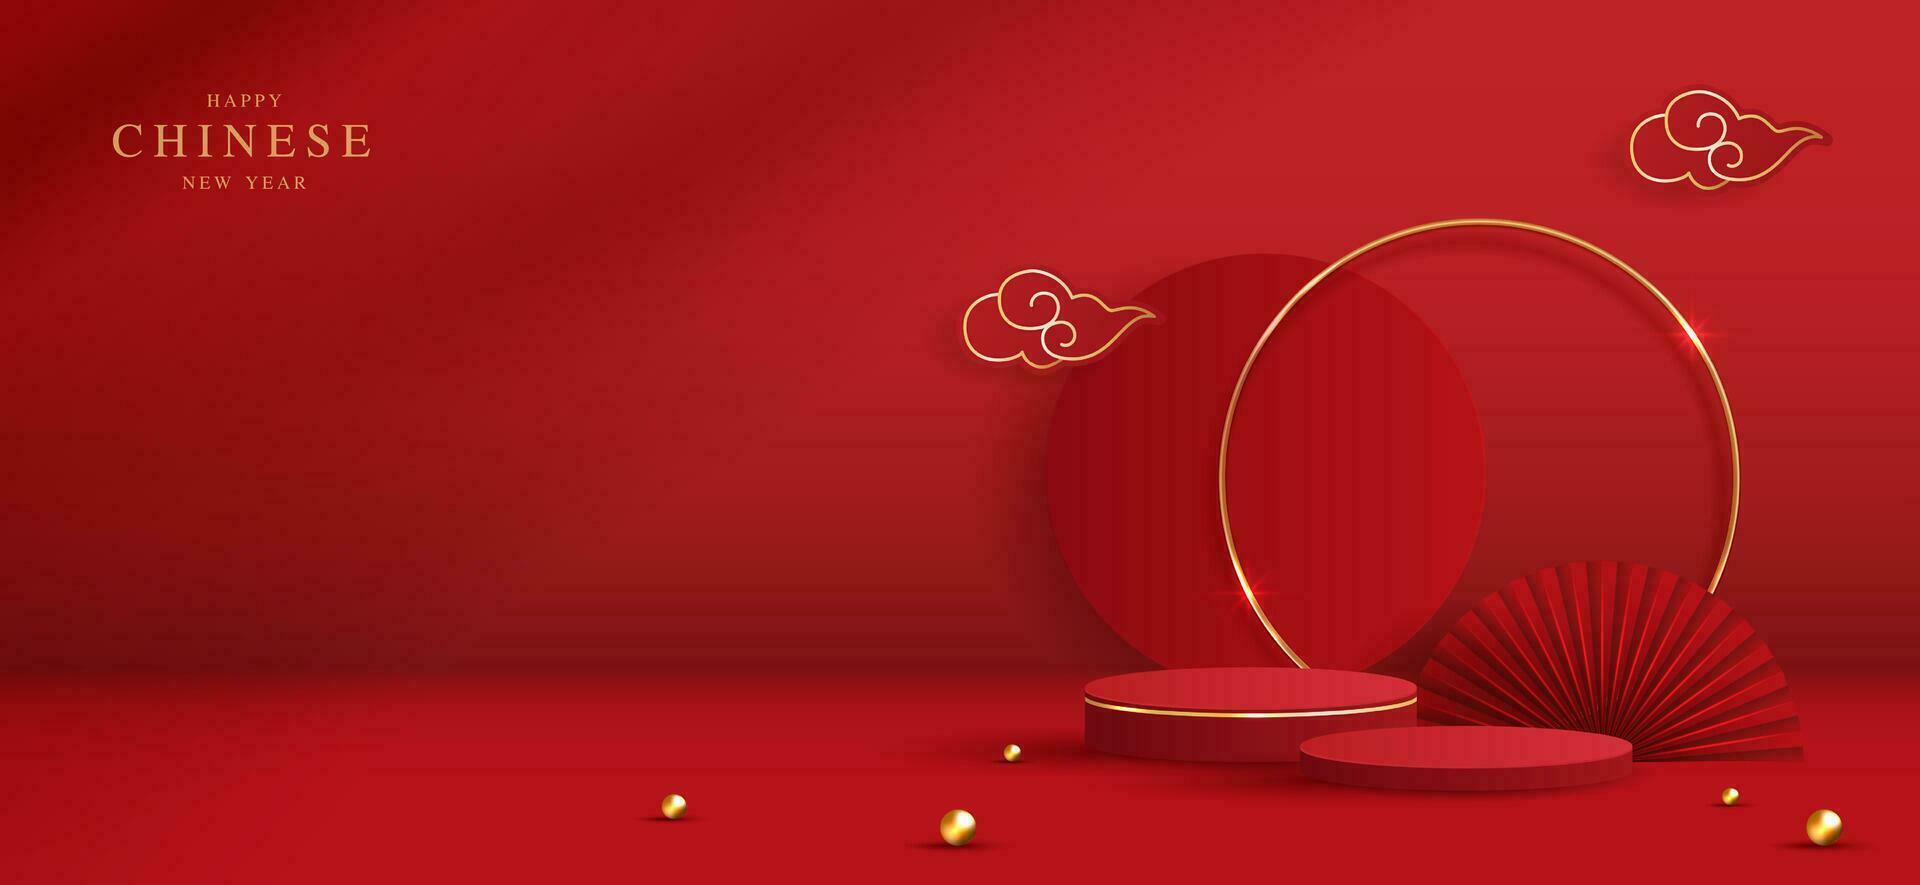 escenario de podio estilo chino para el año nuevo chino y festivales o festival de mediados de otoño con fondo rojo. escenario simulado con linternas festivas y nubes. diseño vectorial vector